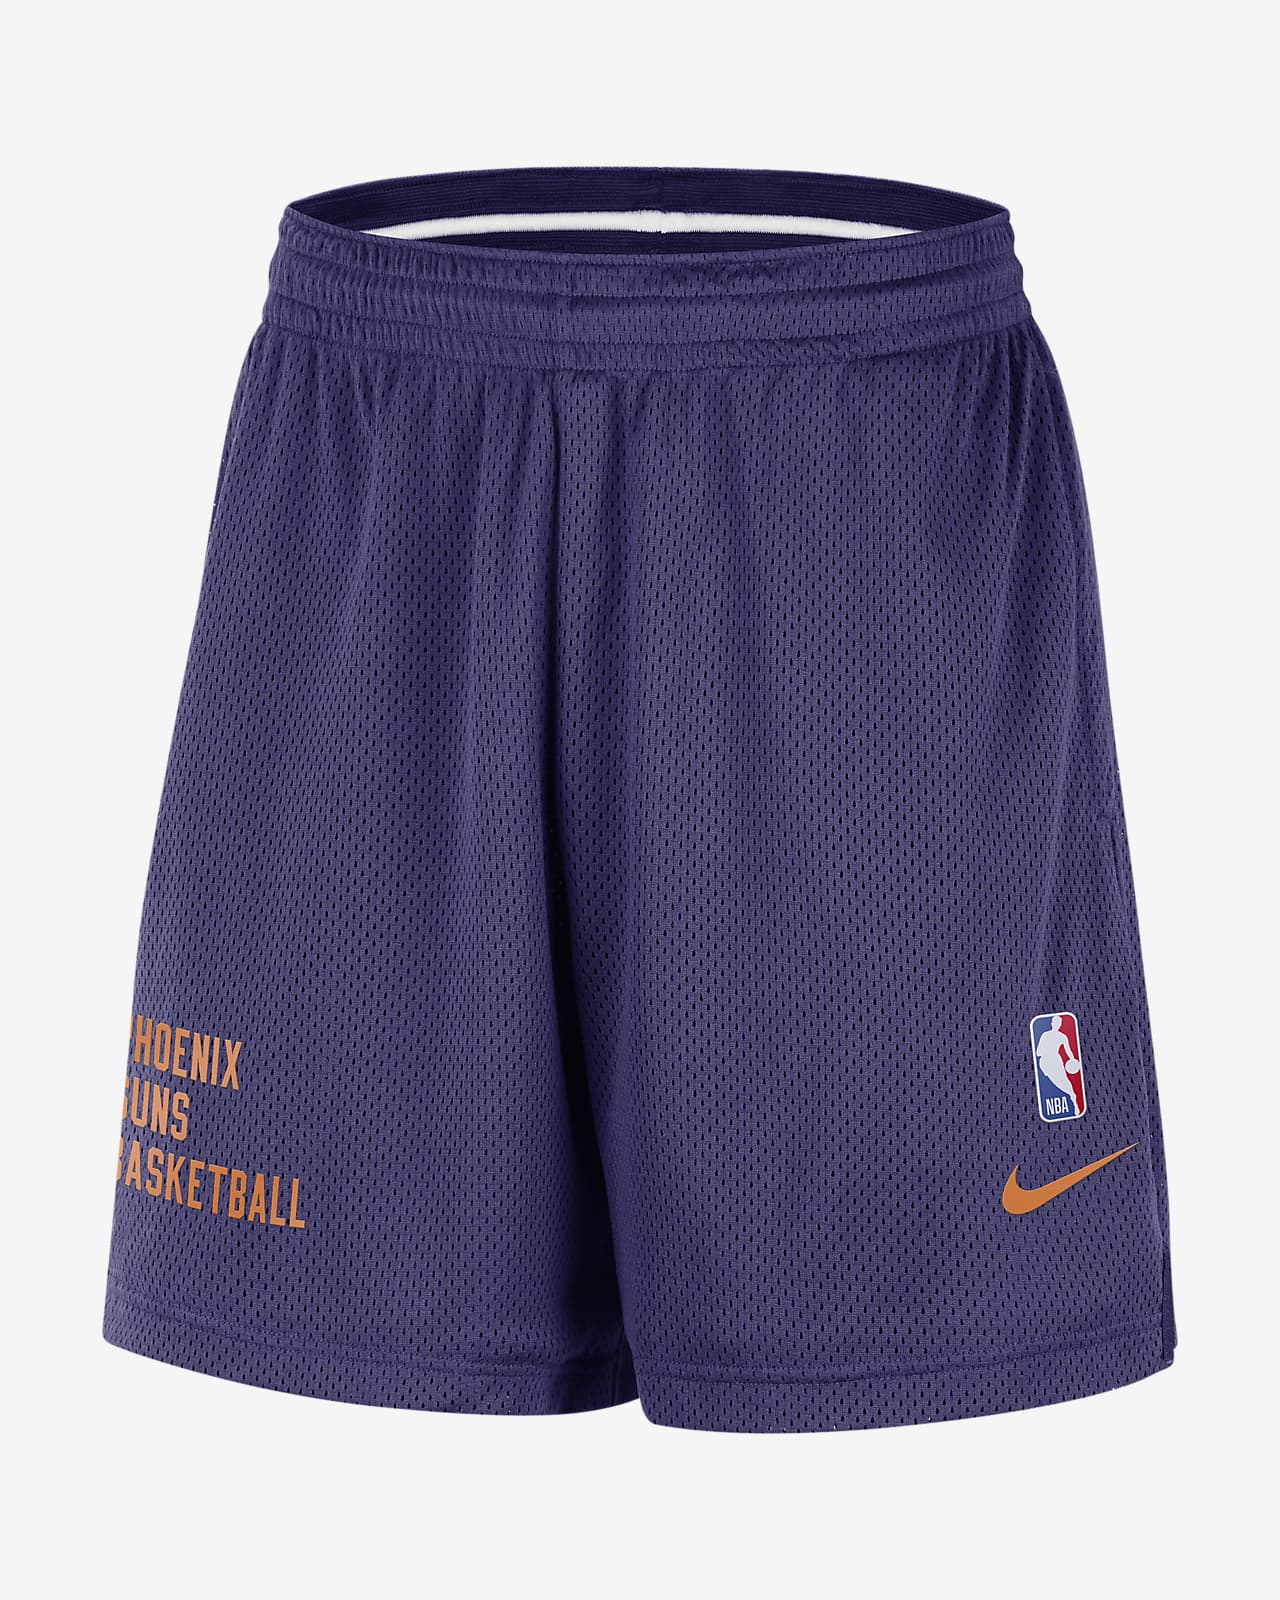 Phoenix Suns Men's Nike NBA Mesh Shorts